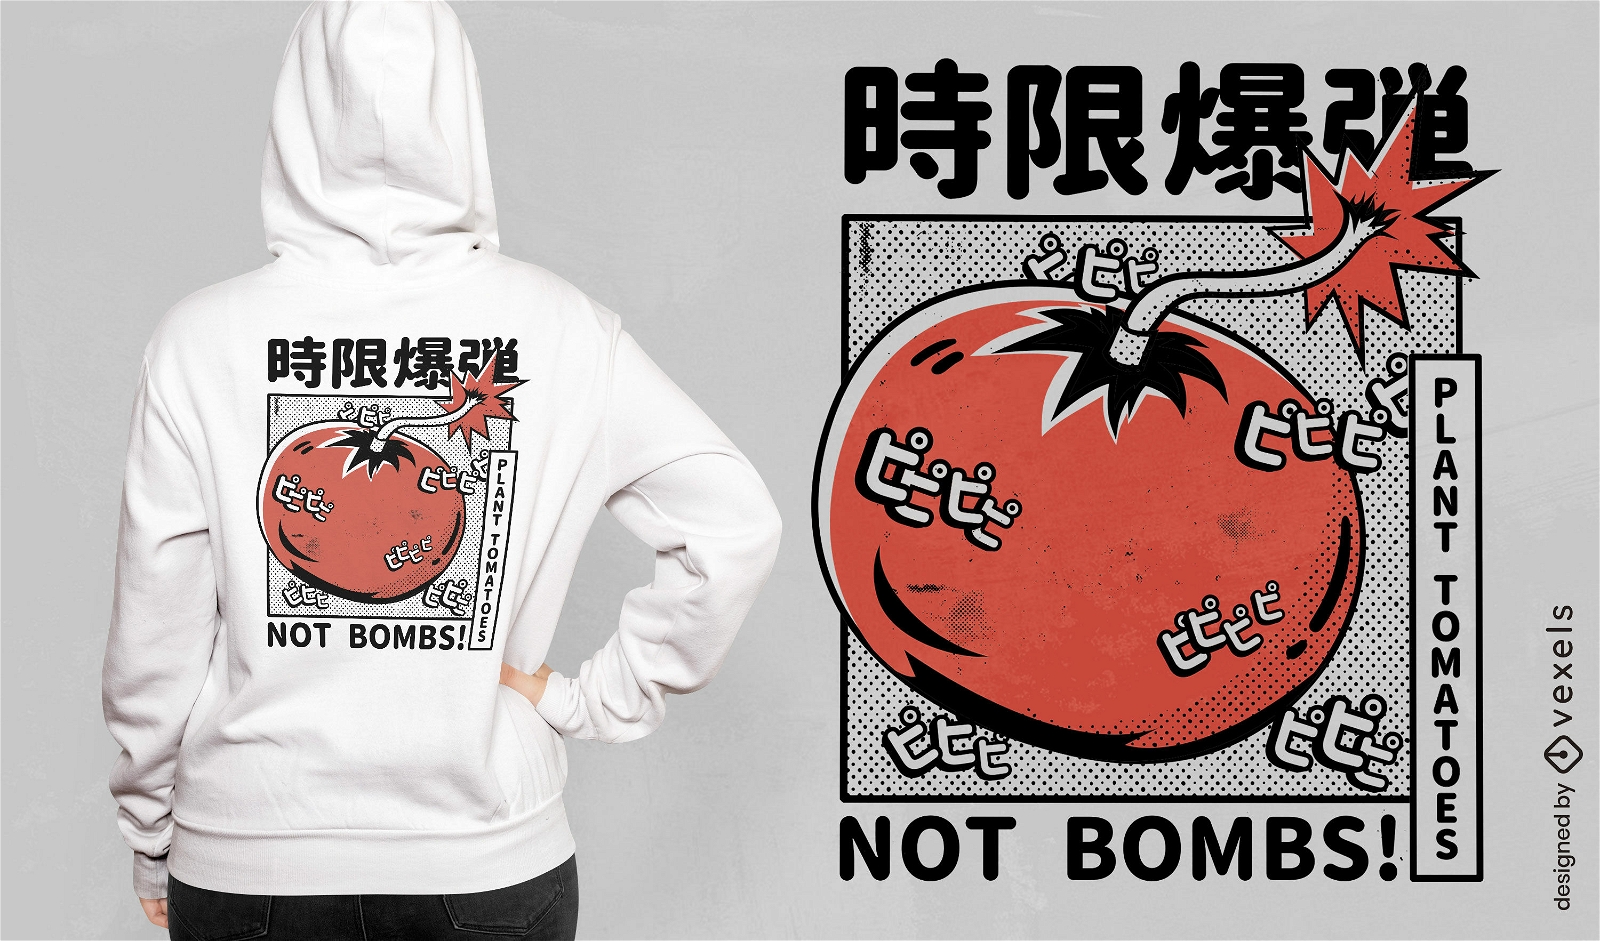 Dise?o de camiseta japonesa bomba de tomate.